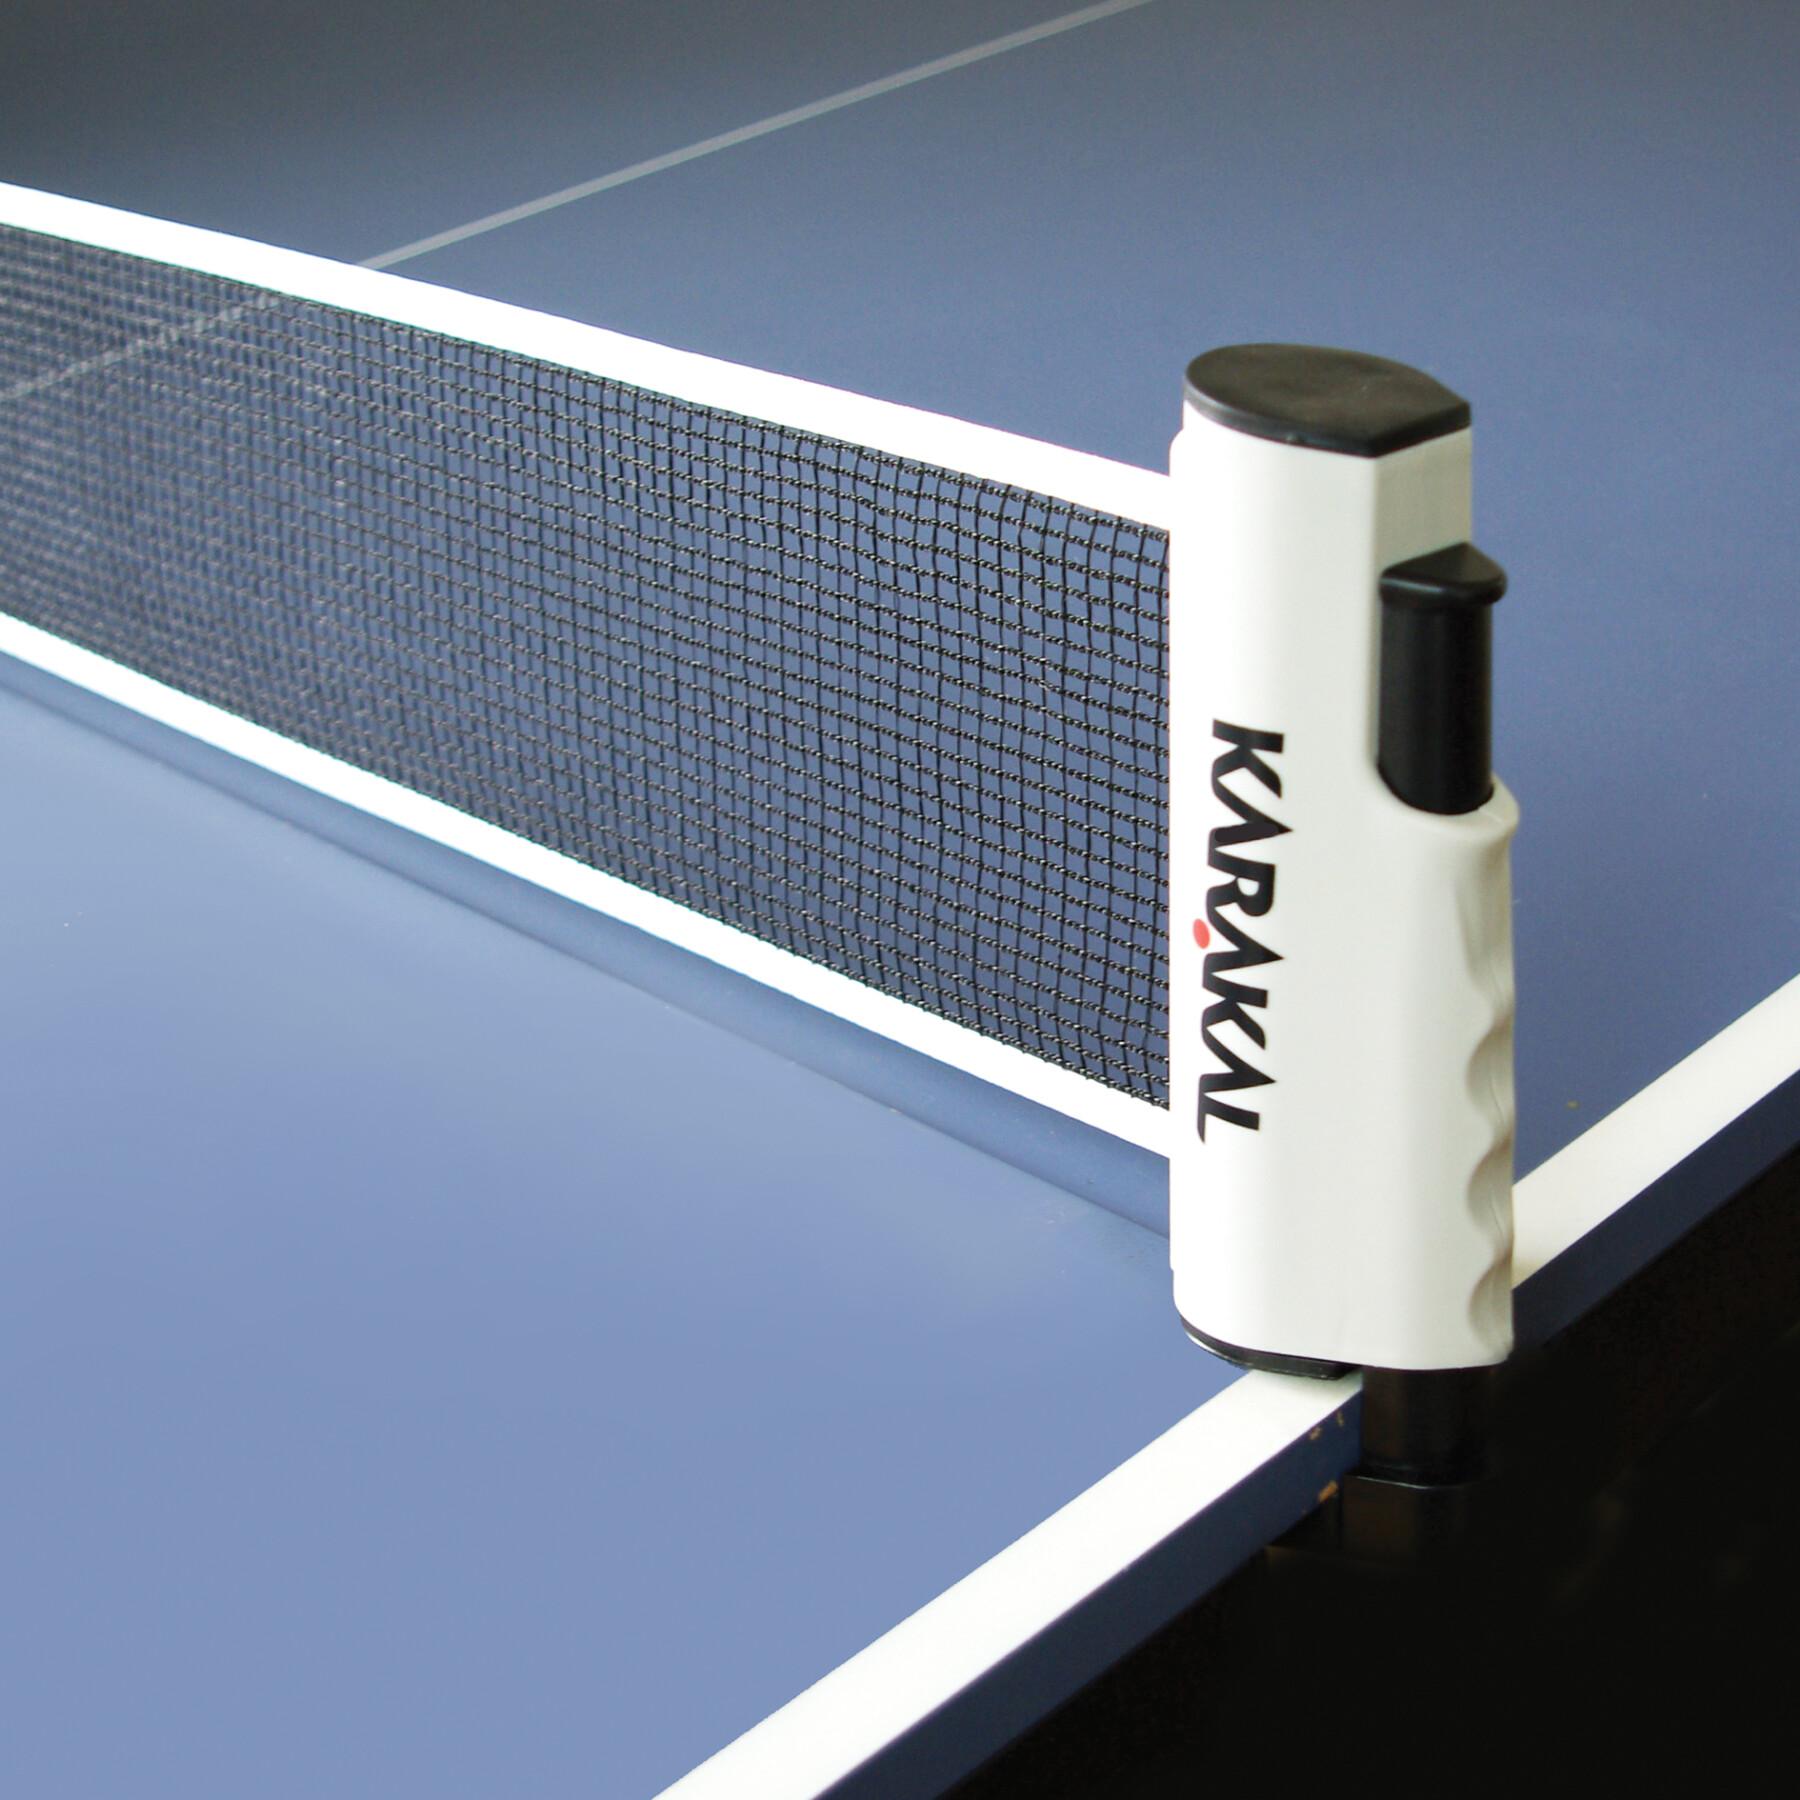 Table tennis net kit Karakal